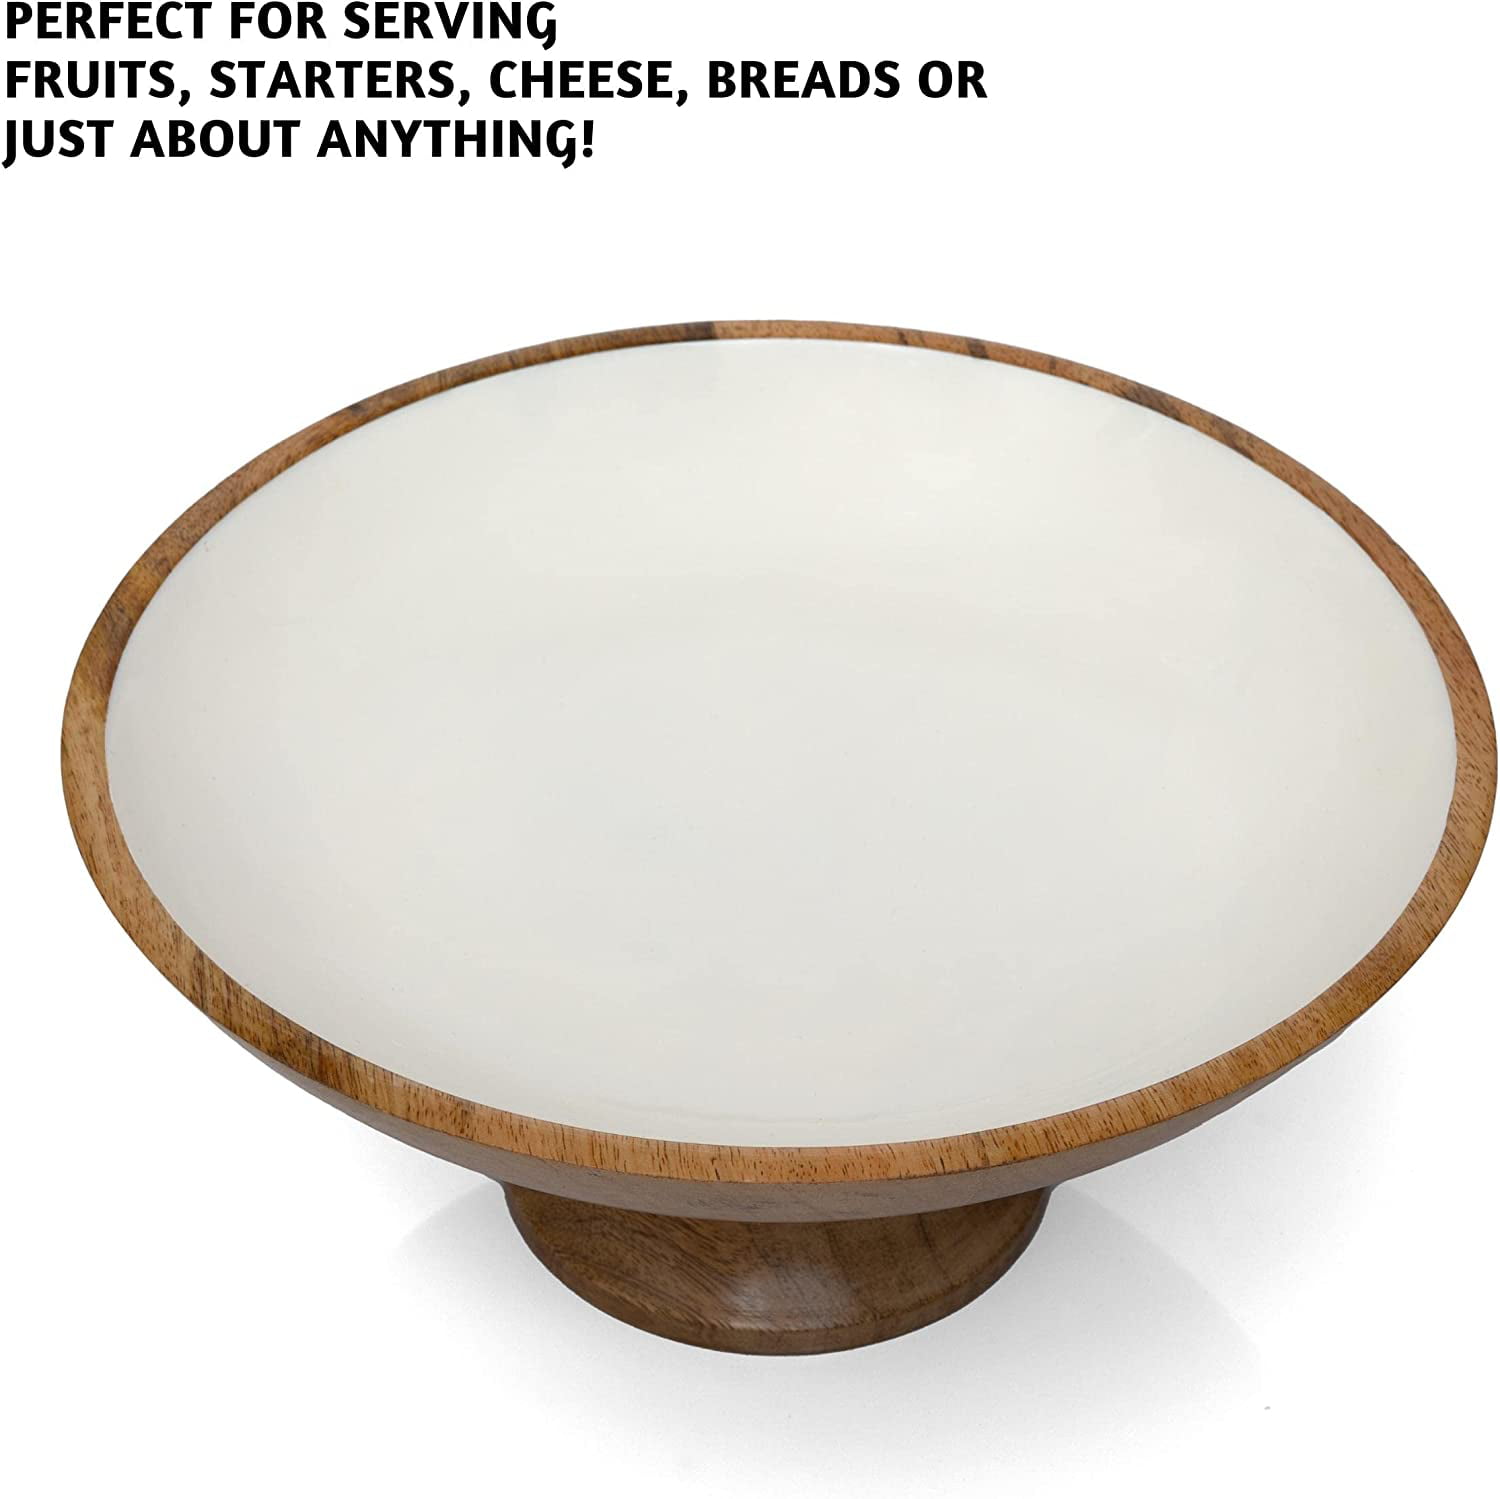 Folkulture Wood Fruit Bowl or Decorative Pedestal Bowl for Table